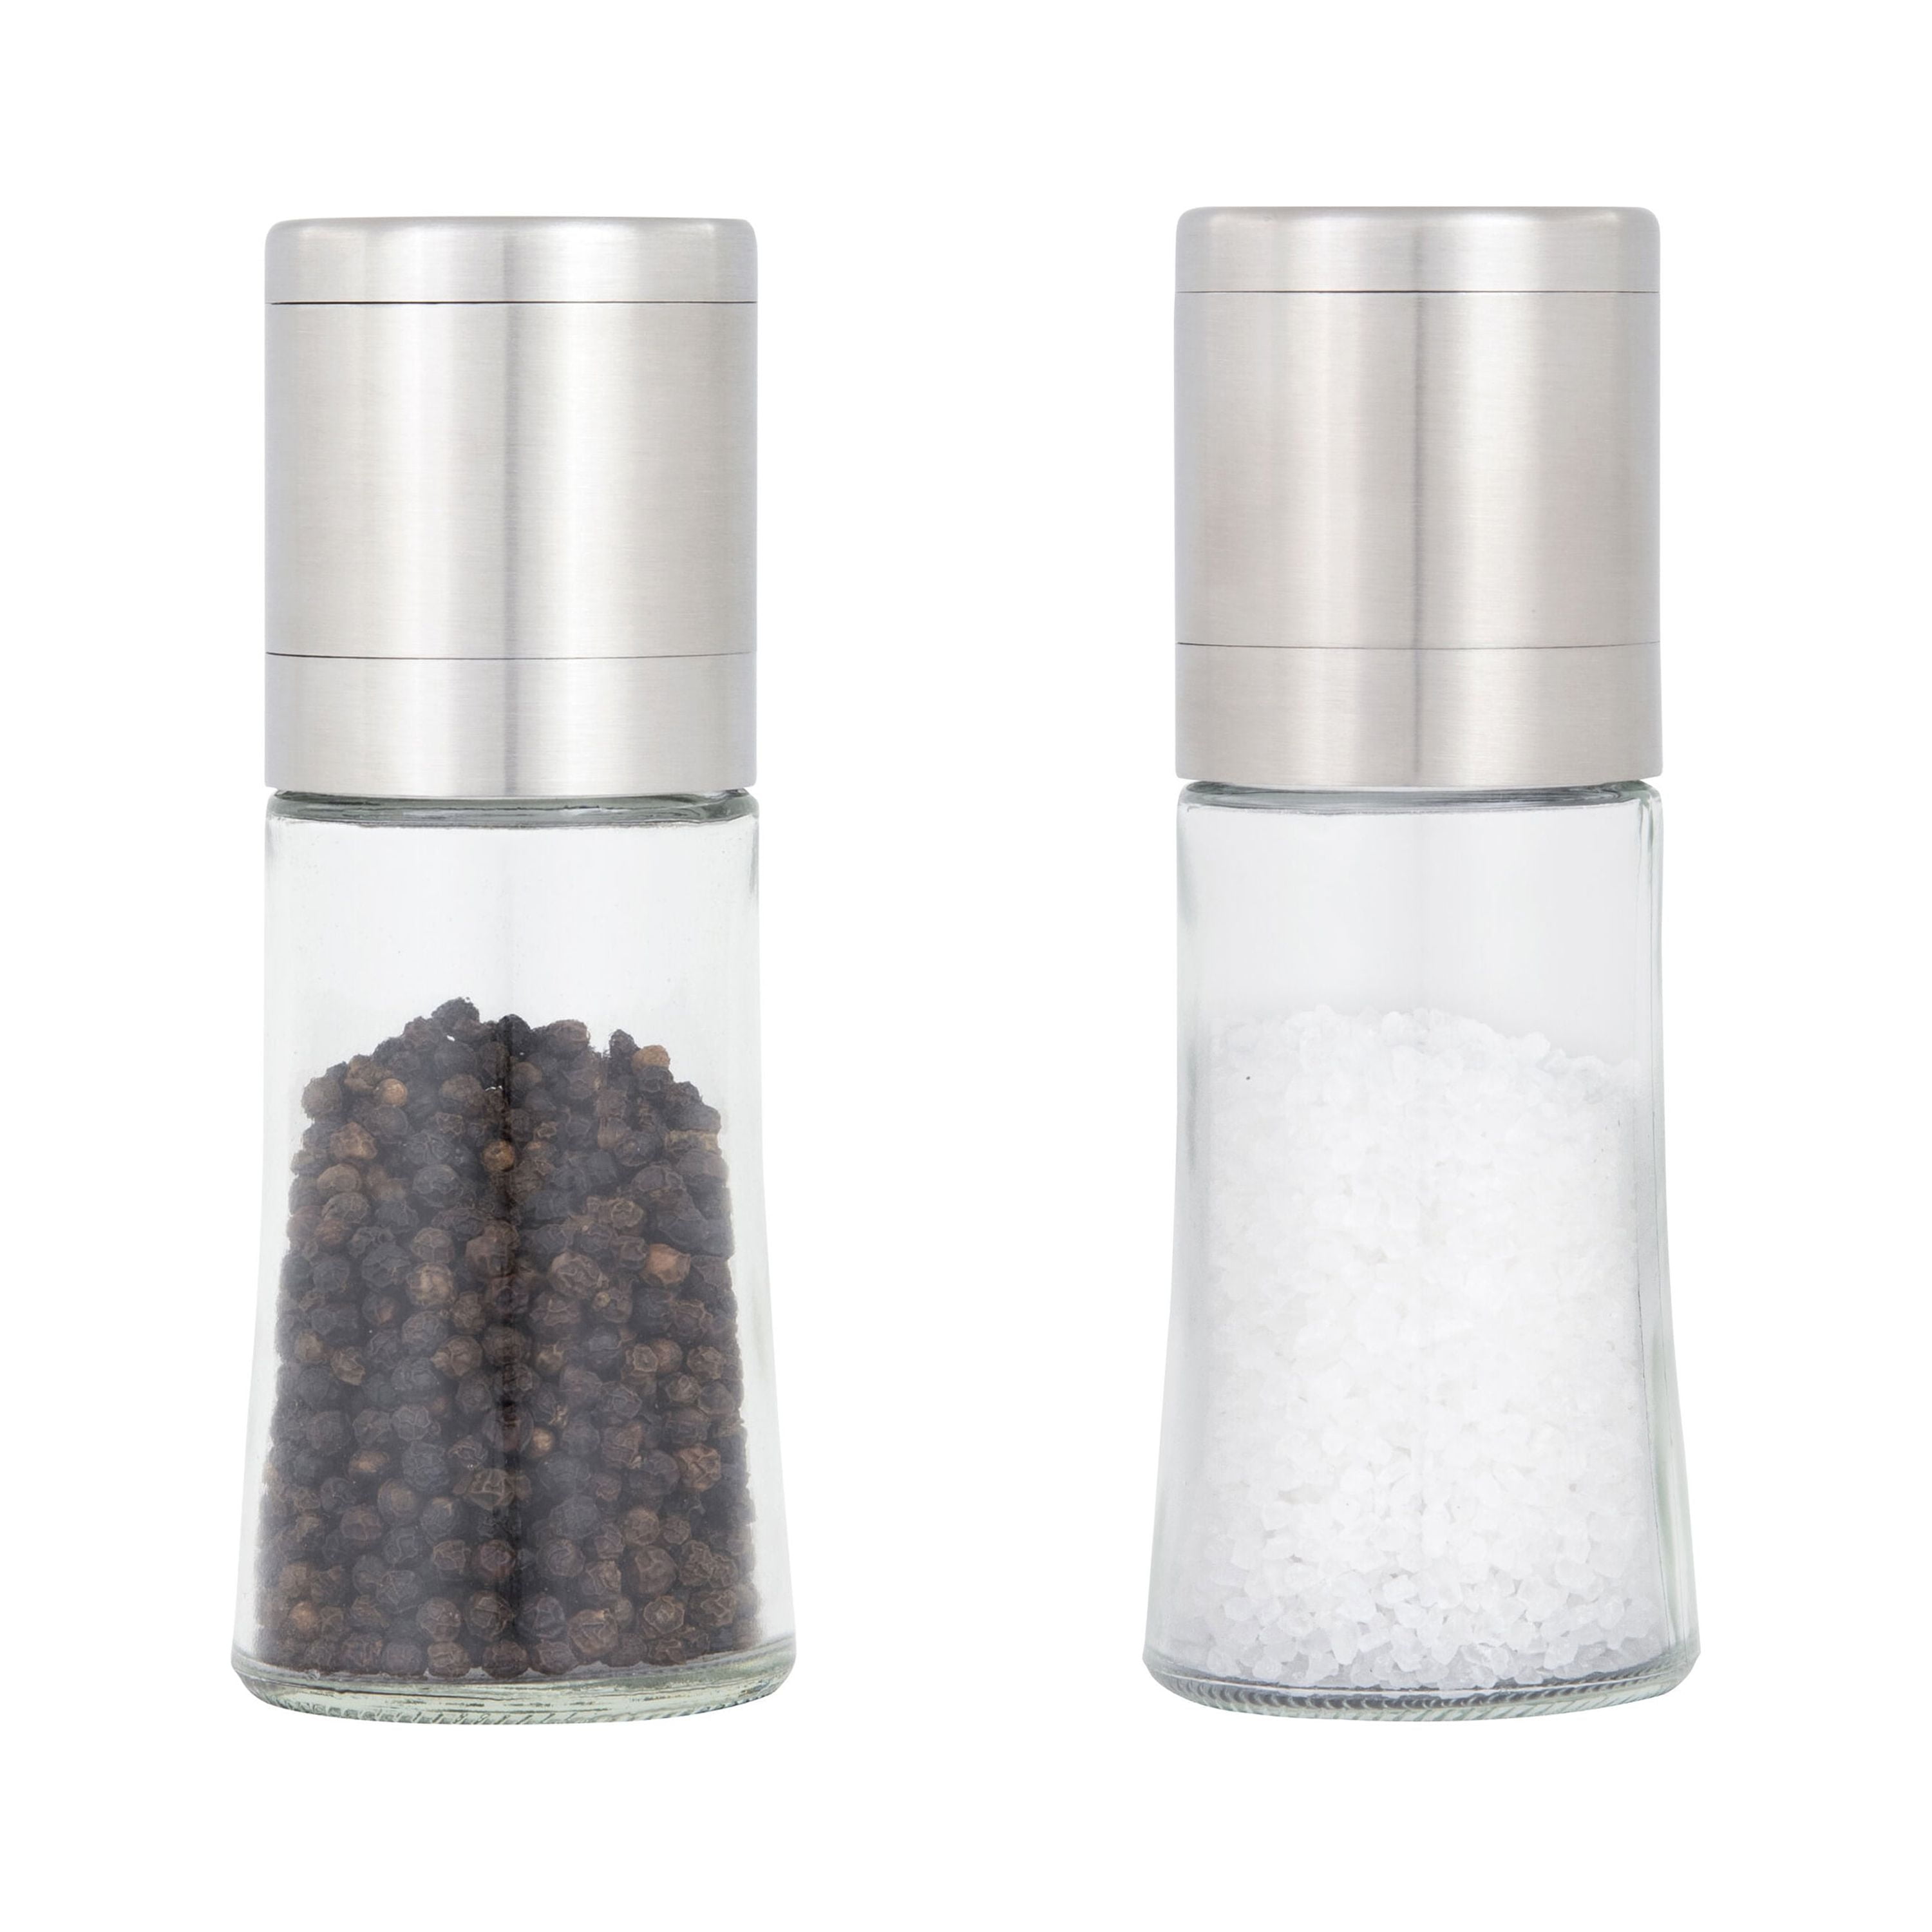 Plastic Salt Shaker and Pepper Grinder Mill Value Set - Great for